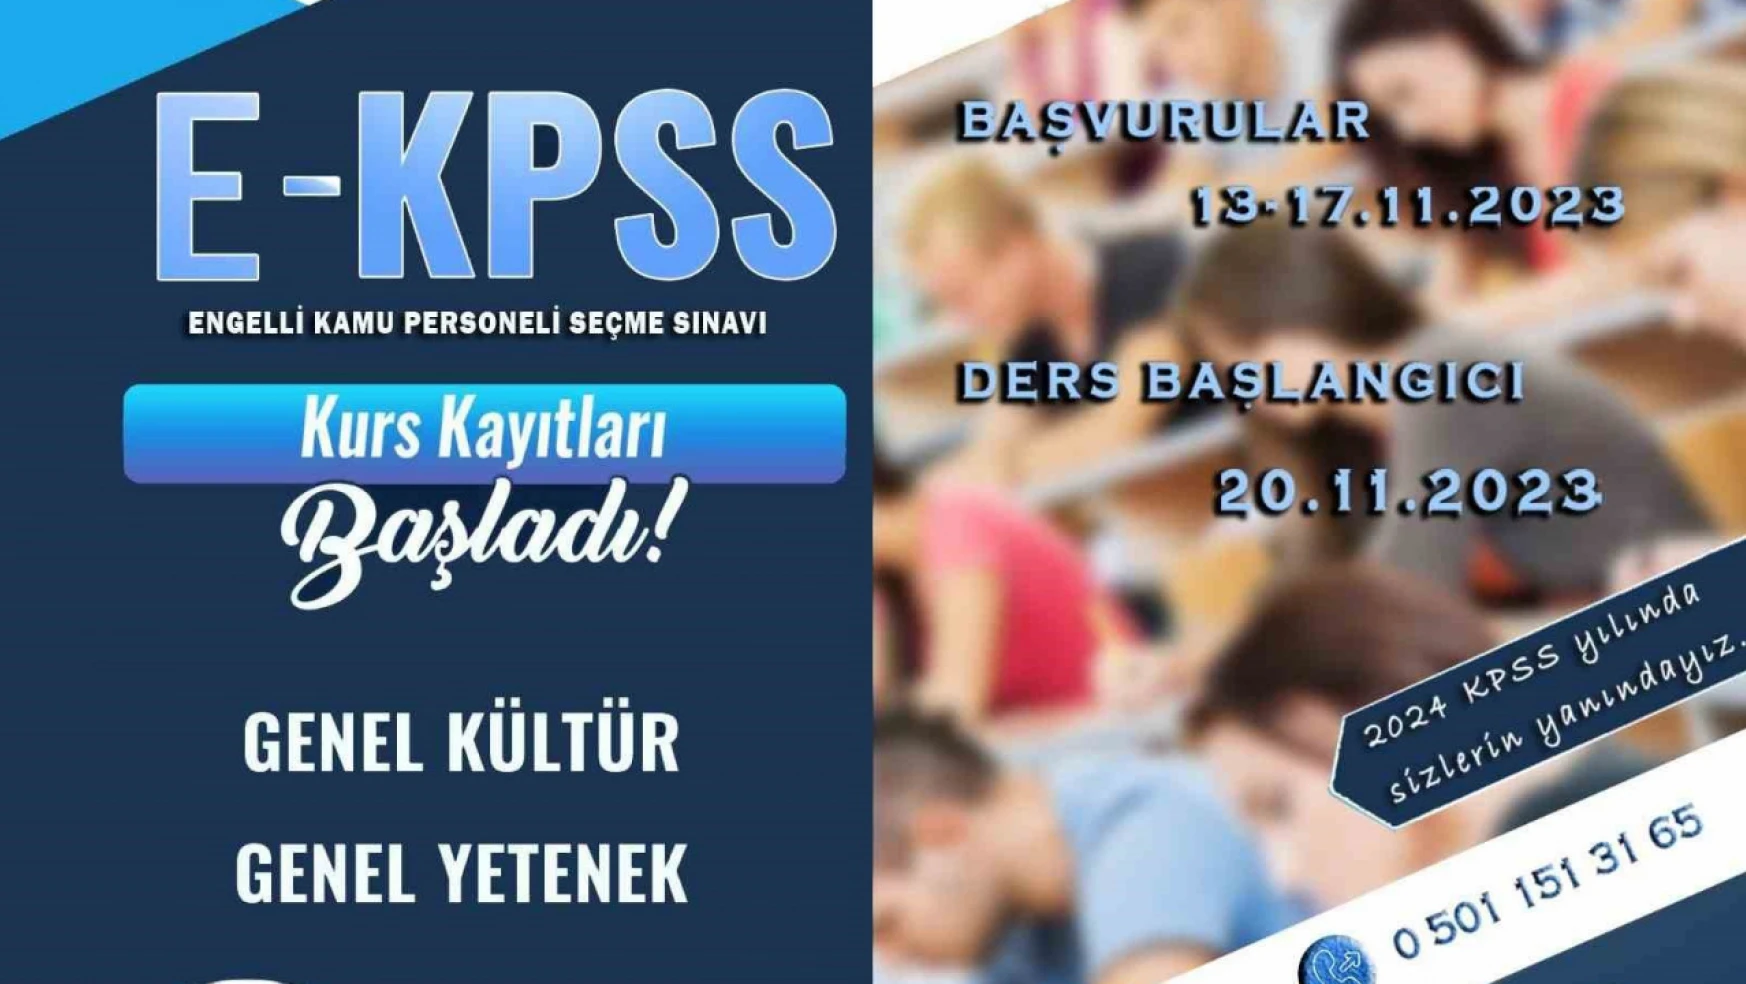 Van Büyükşehir Belediyesi ücretsiz EKPSS kursu açtı